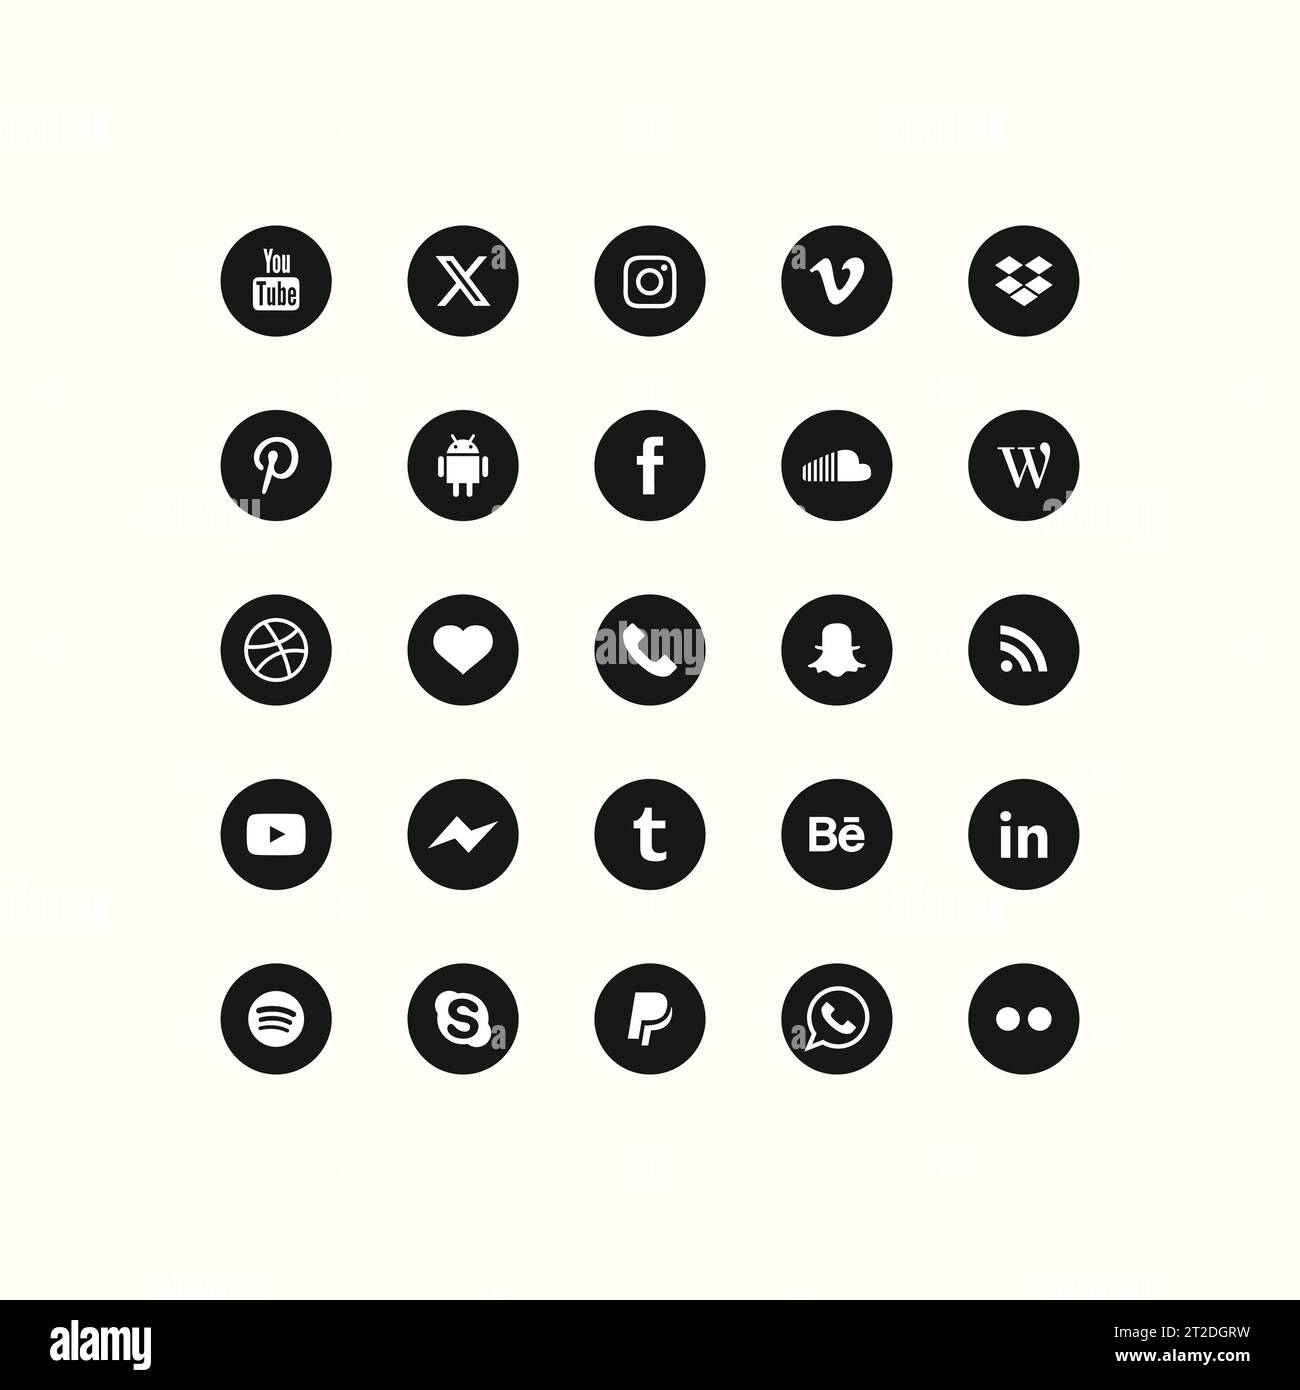 social media logos in a clear vector format Stock Vector